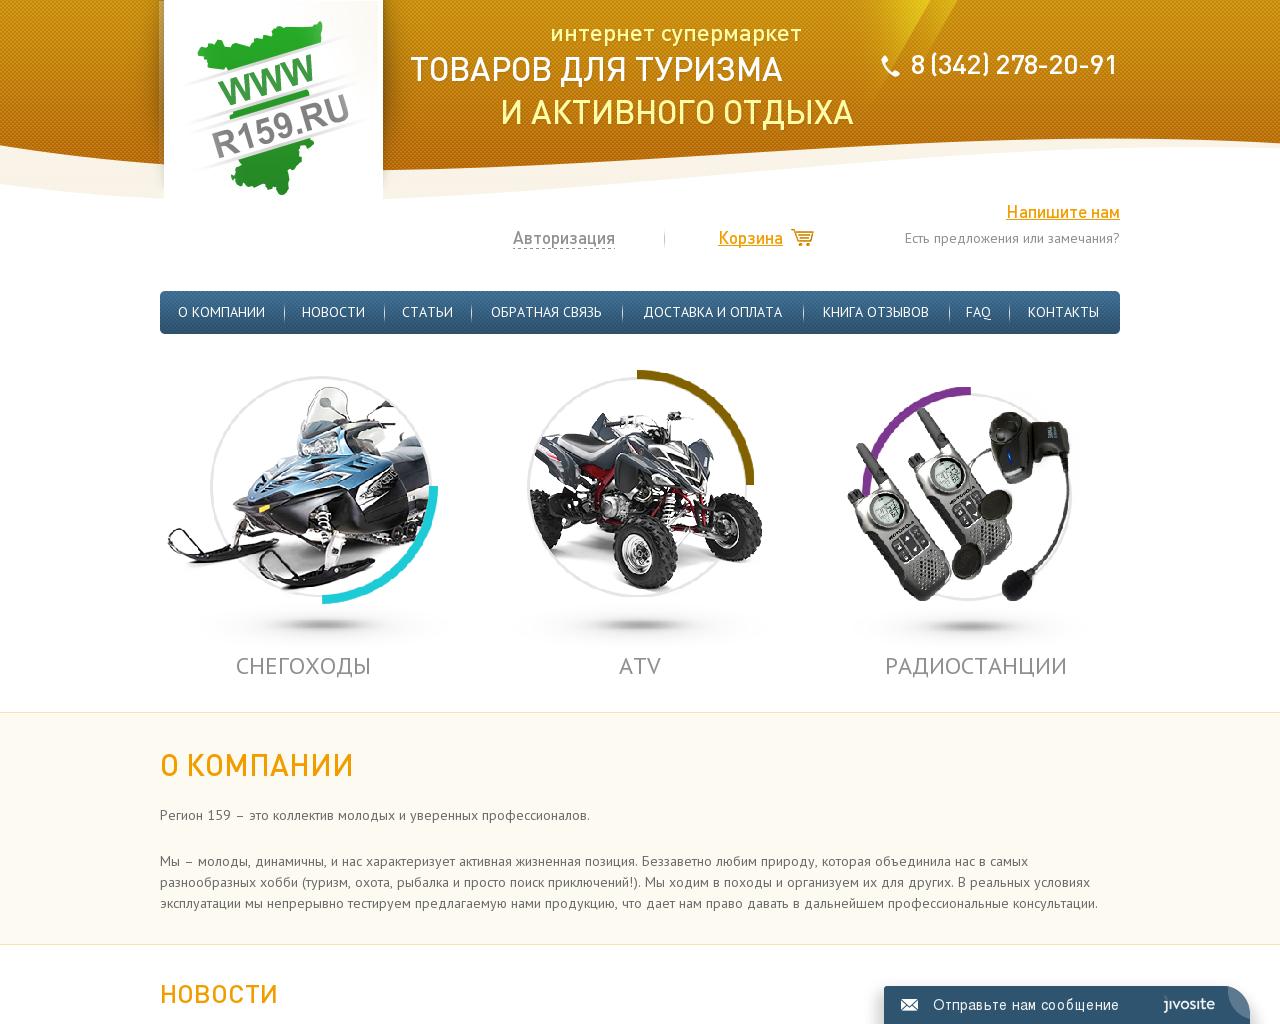 Изображение сайта r159.ru в разрешении 1280x1024